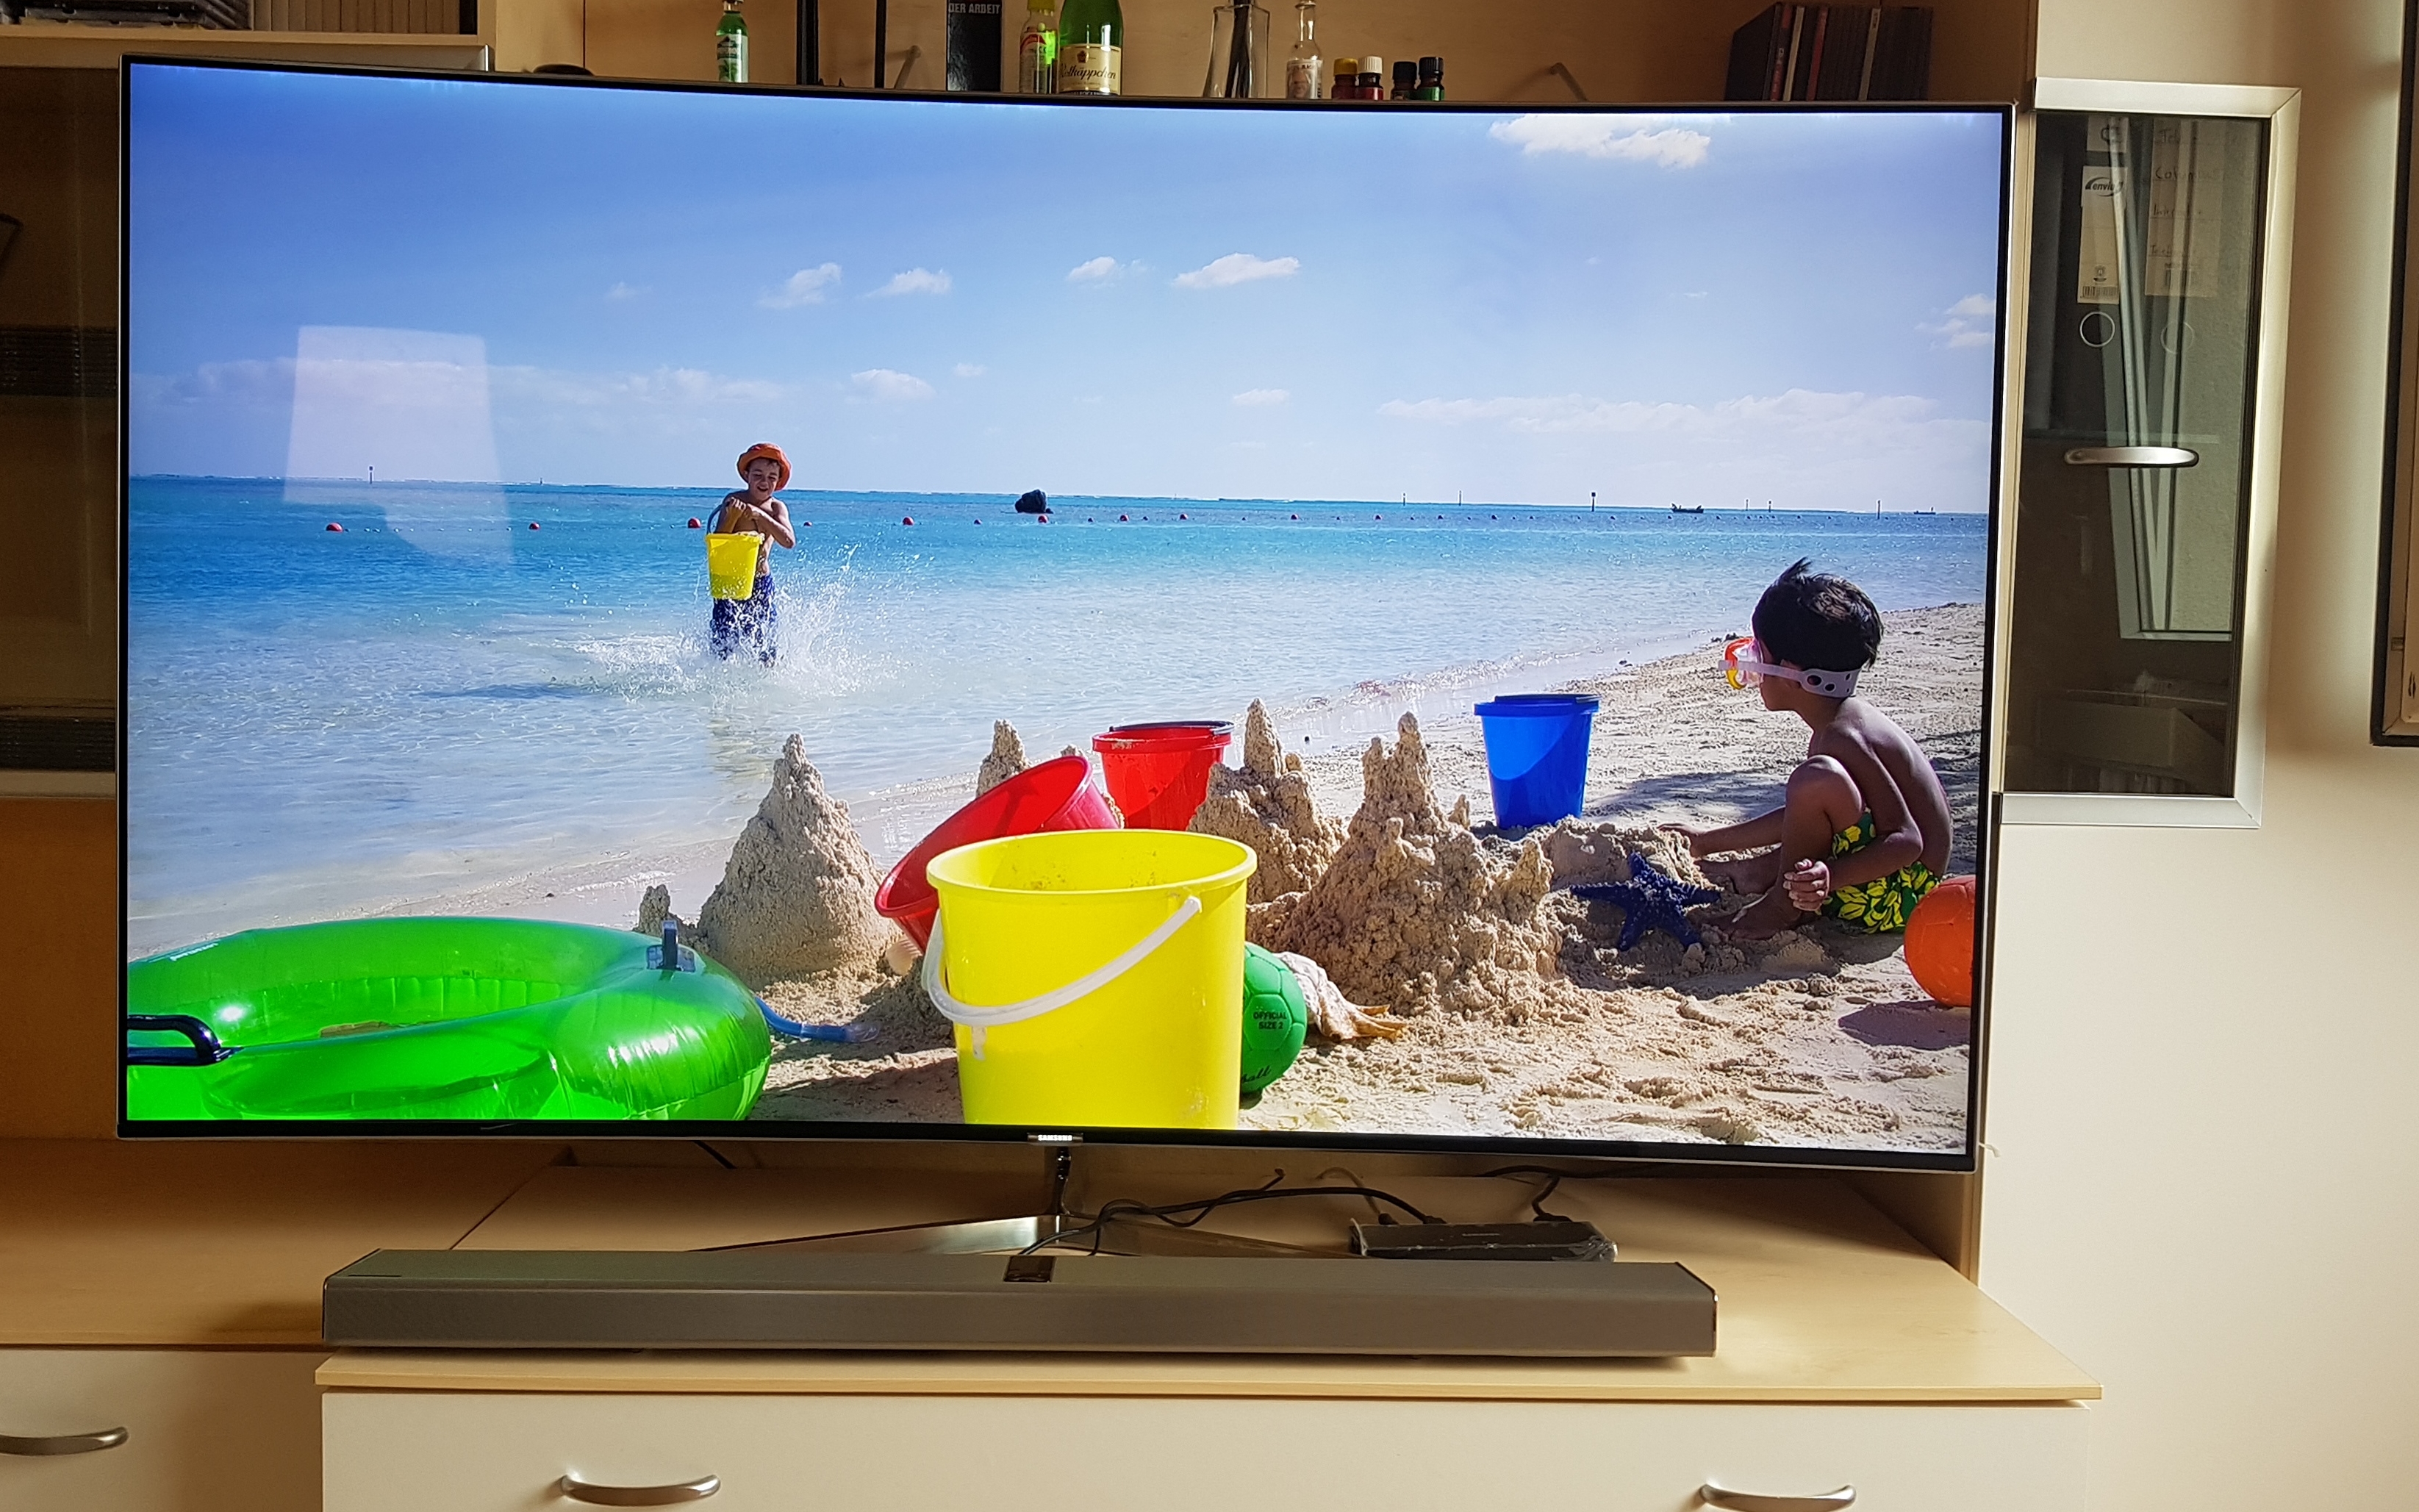 Samsung SUHD TV Bildfehler oder Panel defekt? - Samsung Community